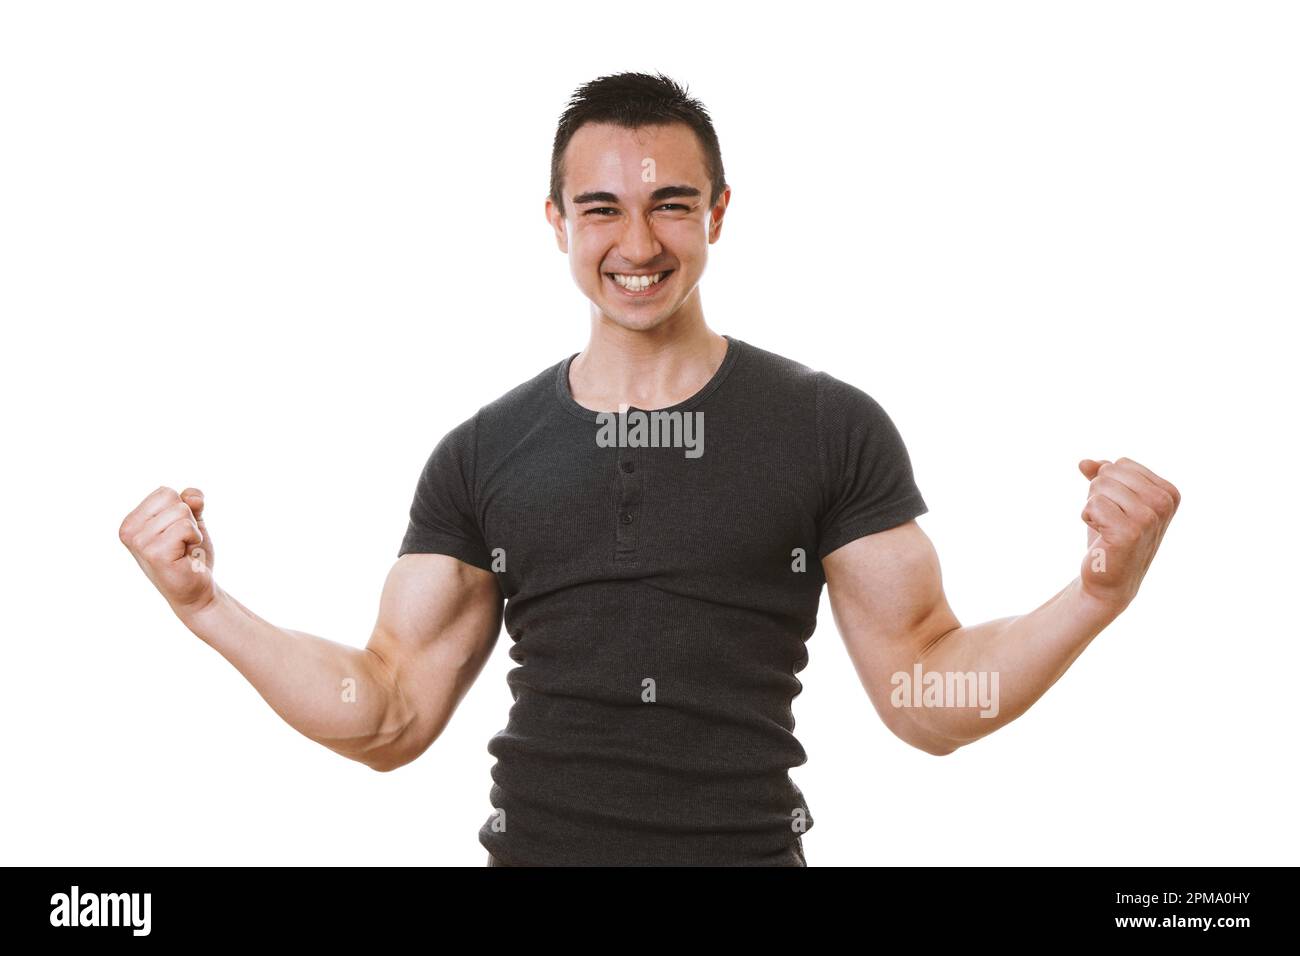 giovane uomo muscolare che celebra il successo in posa vincitore con flexed muscoli e pugni clenched Foto Stock